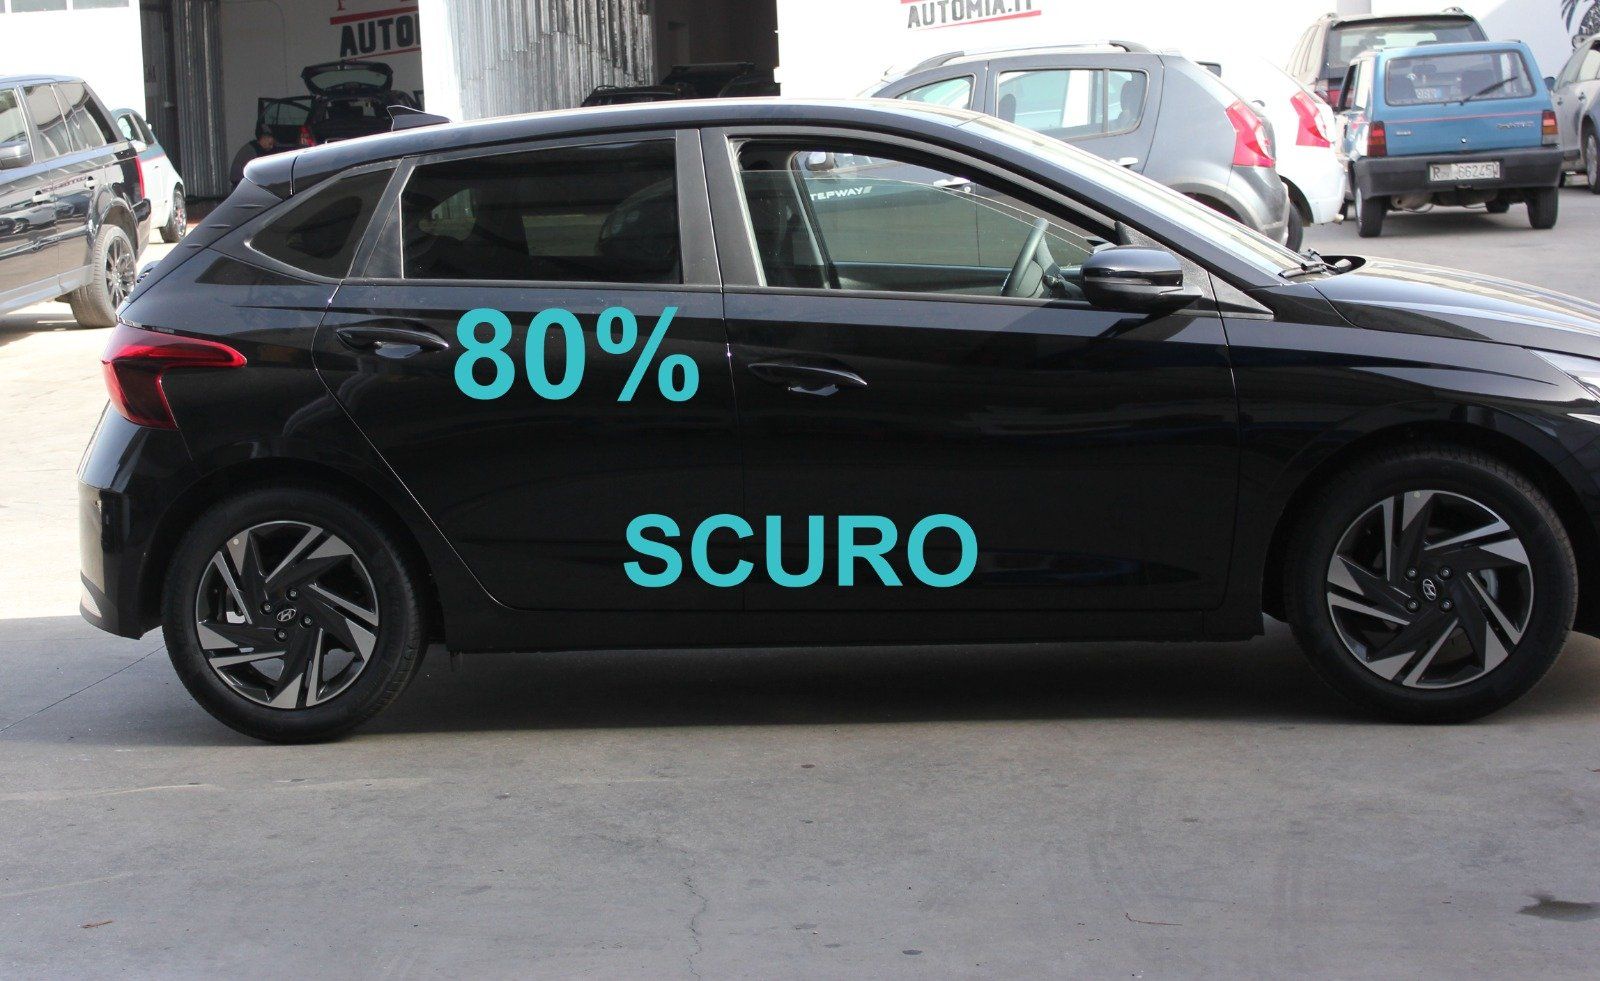 Gradazione  tonalità oscuramento vetri auto con pellicole oscuranti al 80% scuro Hyundai i20 del 2021